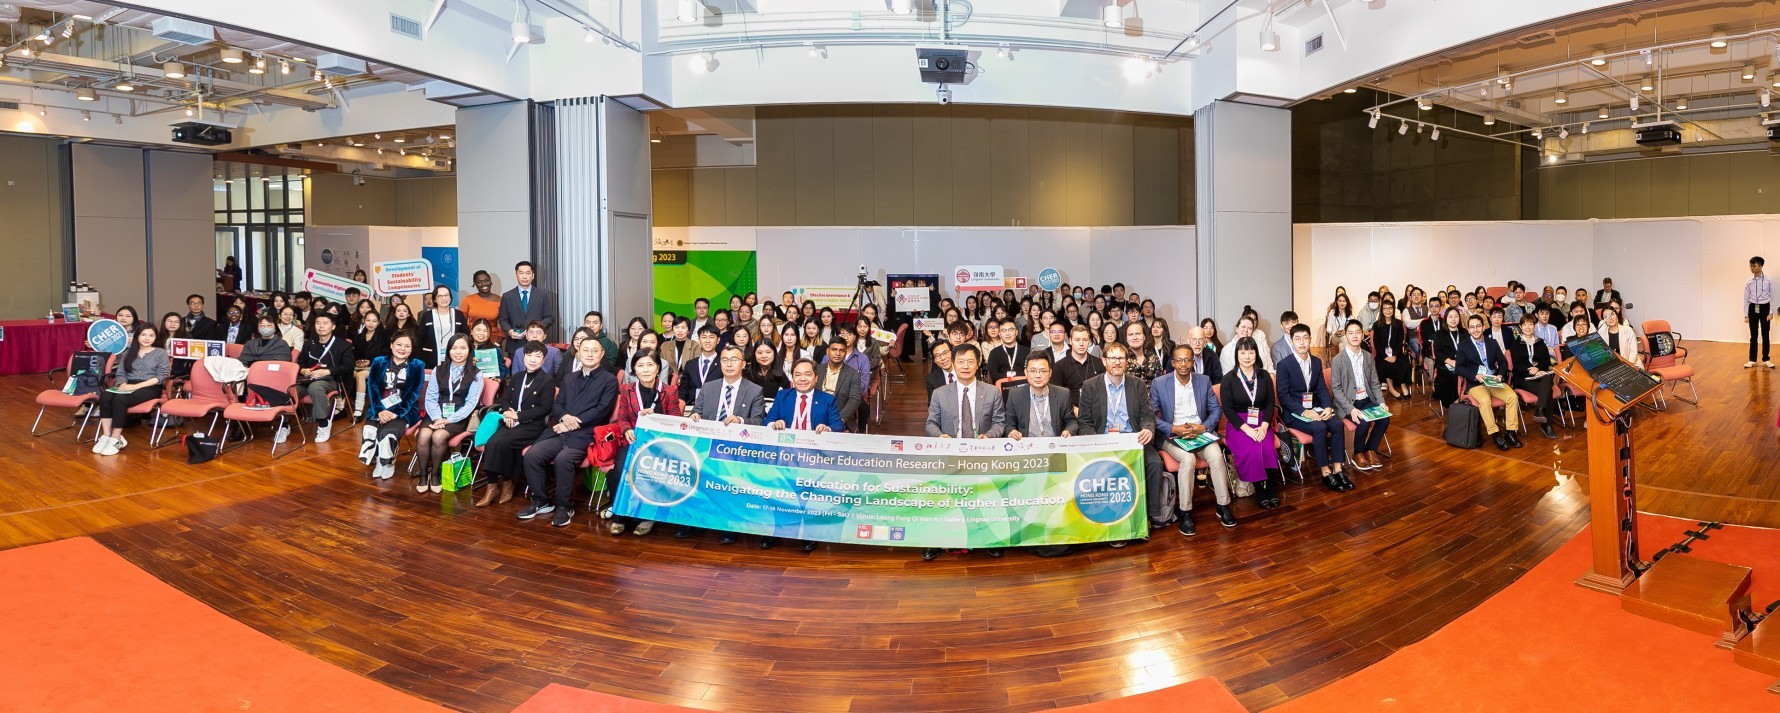 「高等教育研究国际会议 (香港 - 2023)」-探讨可持续发展教育及欢迎新合作伙伴加盟亚太高等教育研究联盟（APHERP）